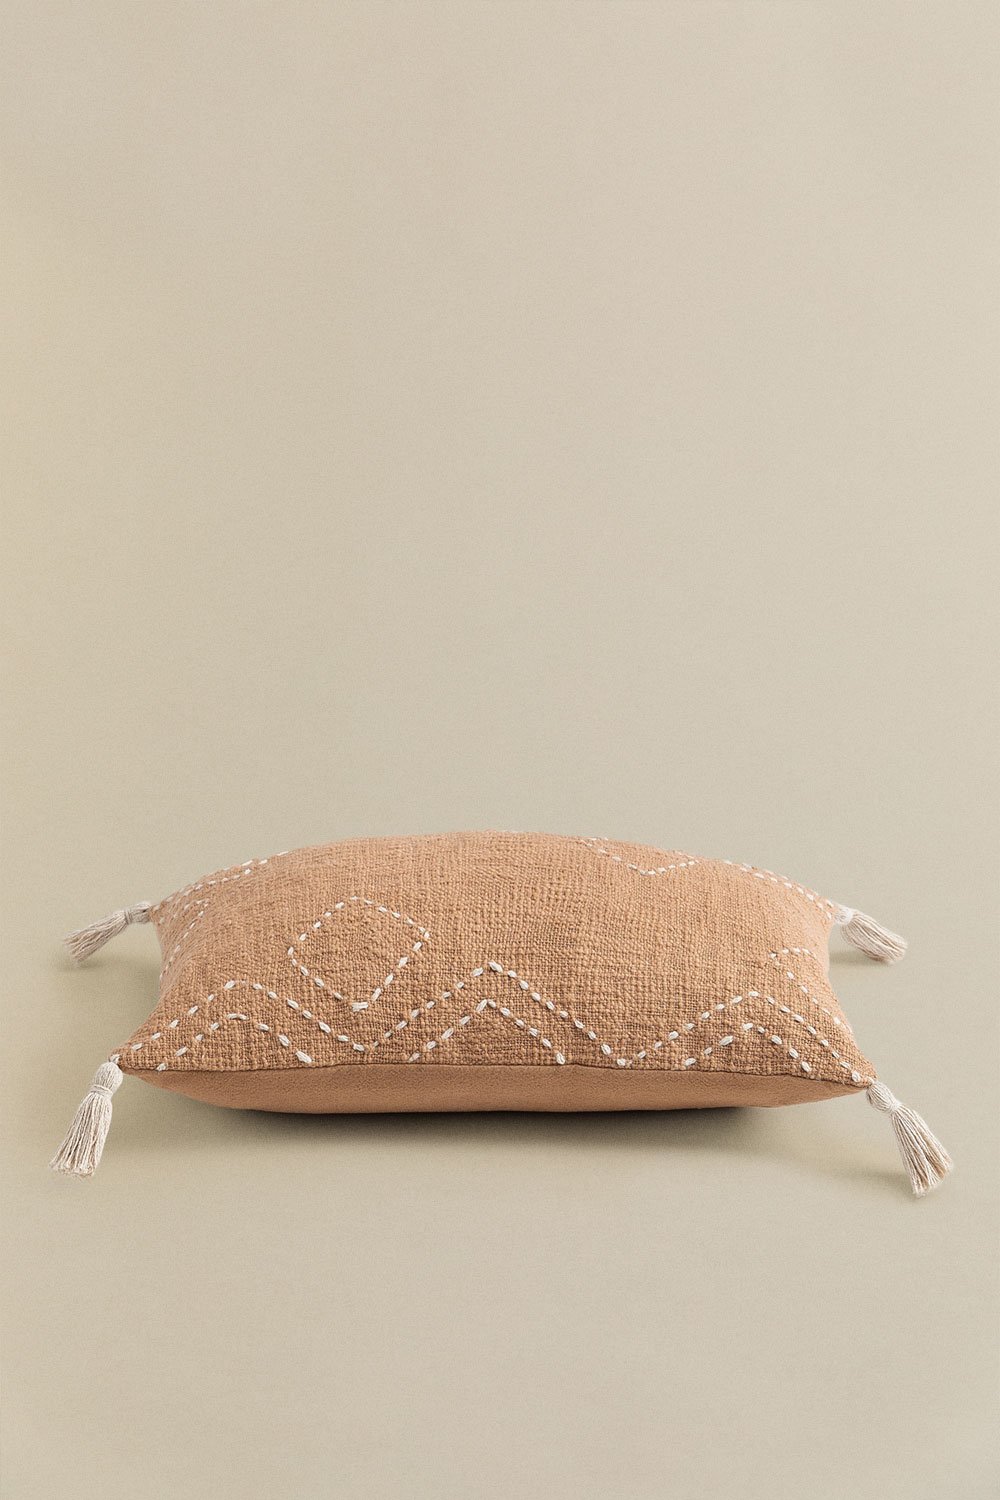 Cuscino Rettangolare in Cotone (30x50 cm) Biara, immagine della galleria 2